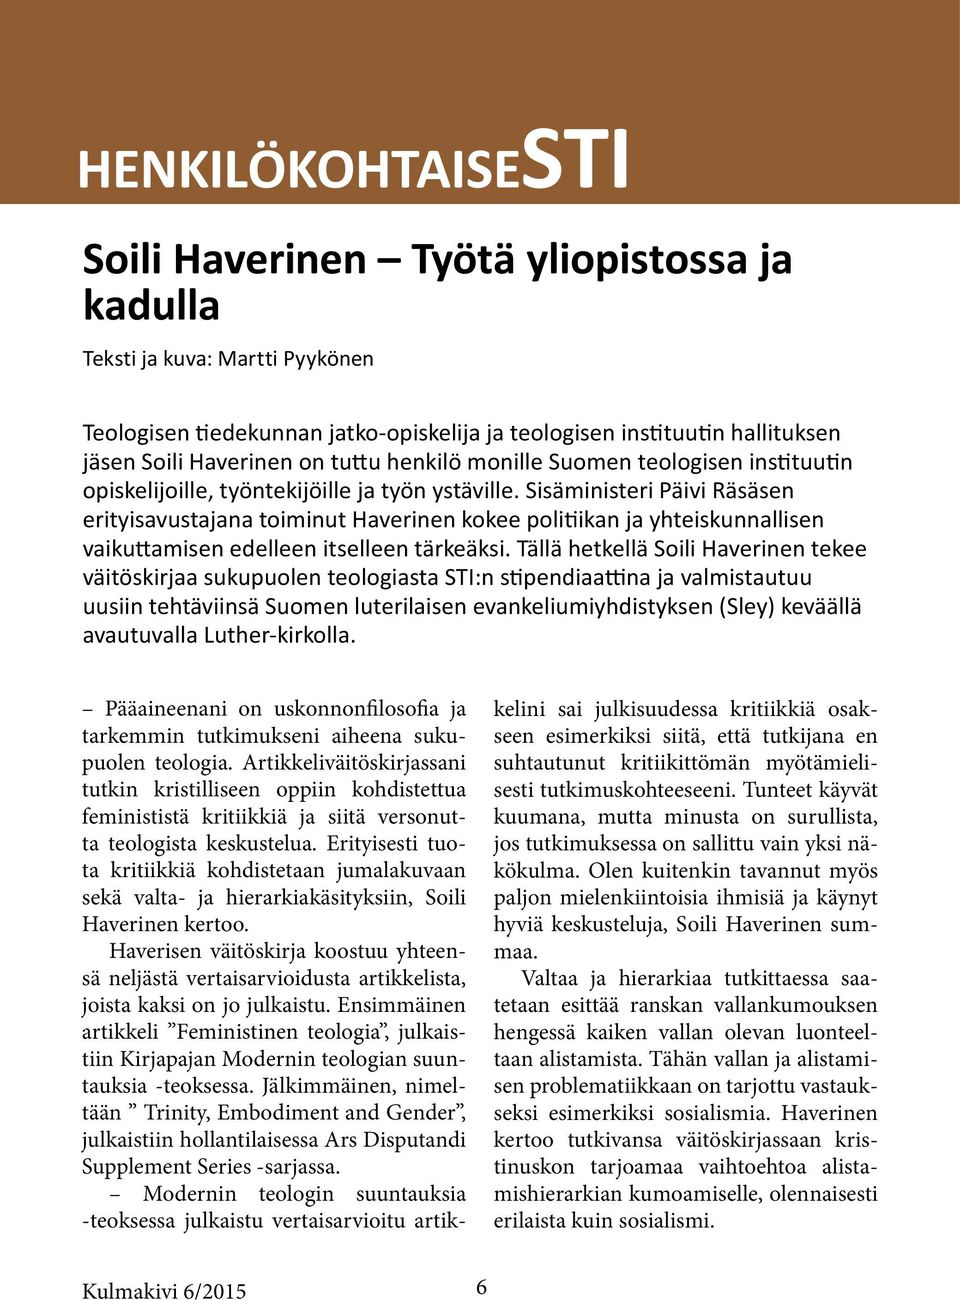 Sisäministeri Päivi Räsäsen erityisavustajana toiminut Haverinen kokee politiikan ja yhteiskunnallisen vaikuttamisen edelleen itselleen tärkeäksi.